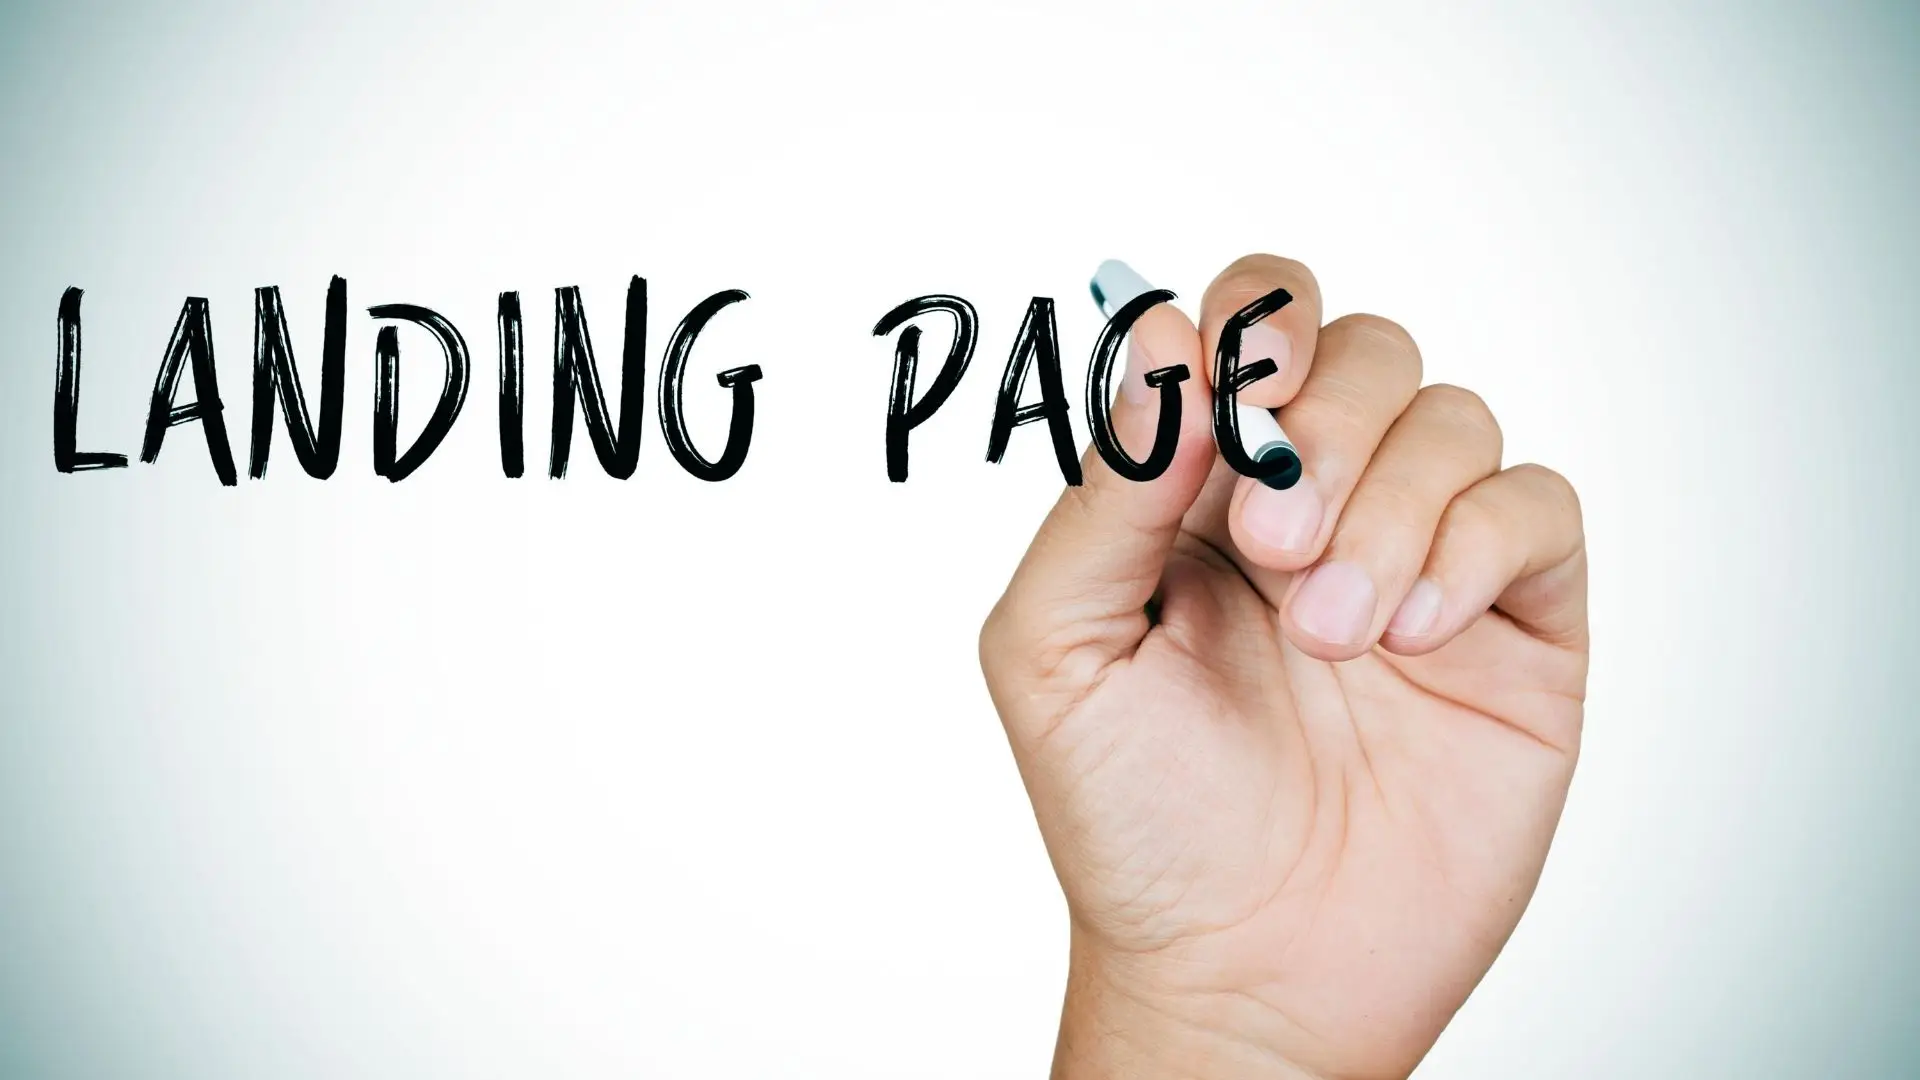 Comment faire de votre Landing page l’atout n°1 de votre site web?